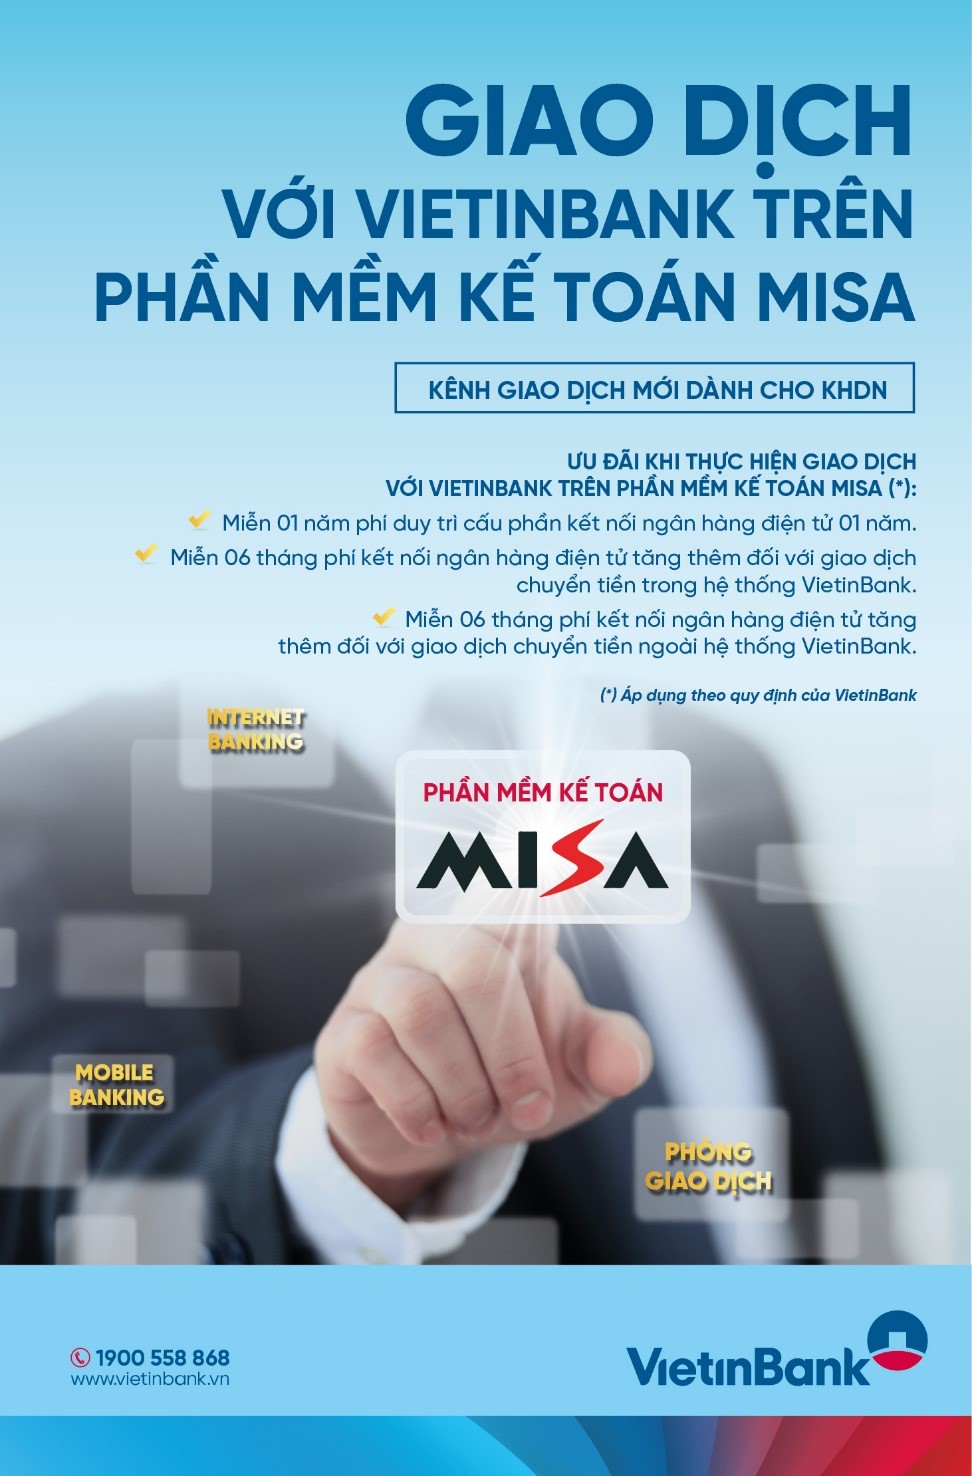  Nhiều tiện ích khi sử dụng Dịch vụ kết nối ngân hàng điện tử trên phần mềm kế toán MISA tại VietinBank 